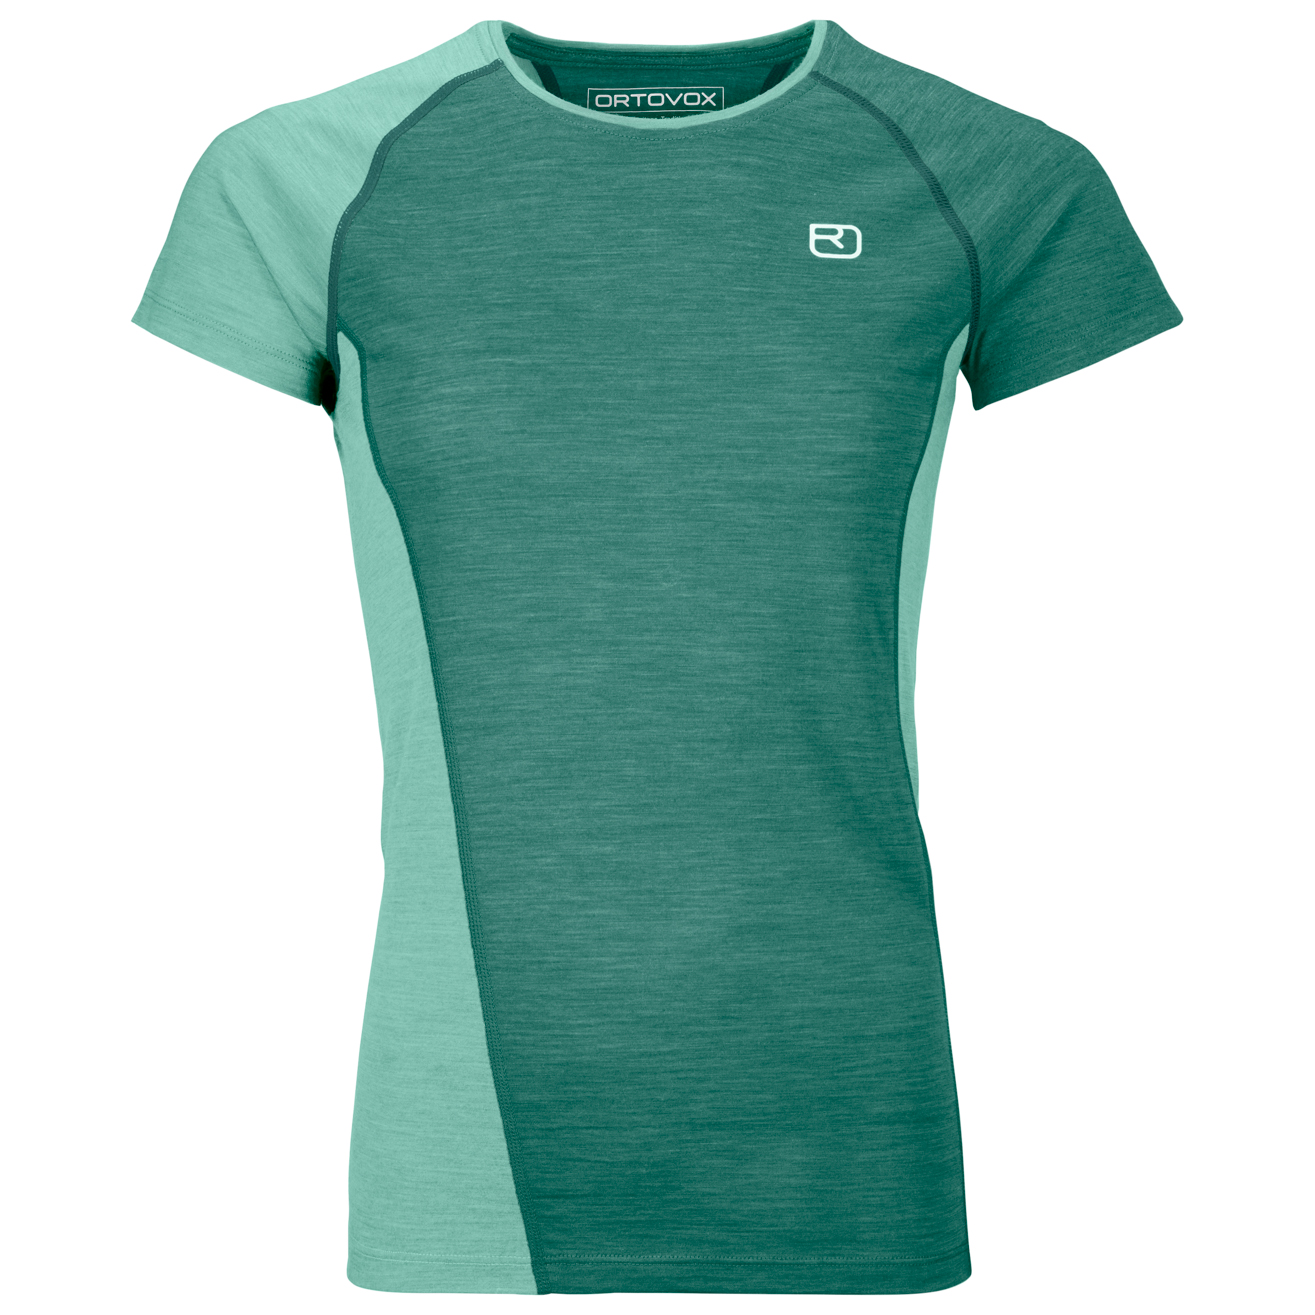 Функциональная рубашка Ortovox Women's 120 Cool Tec Fast Upward T Shirt, цвет Arctic Grey